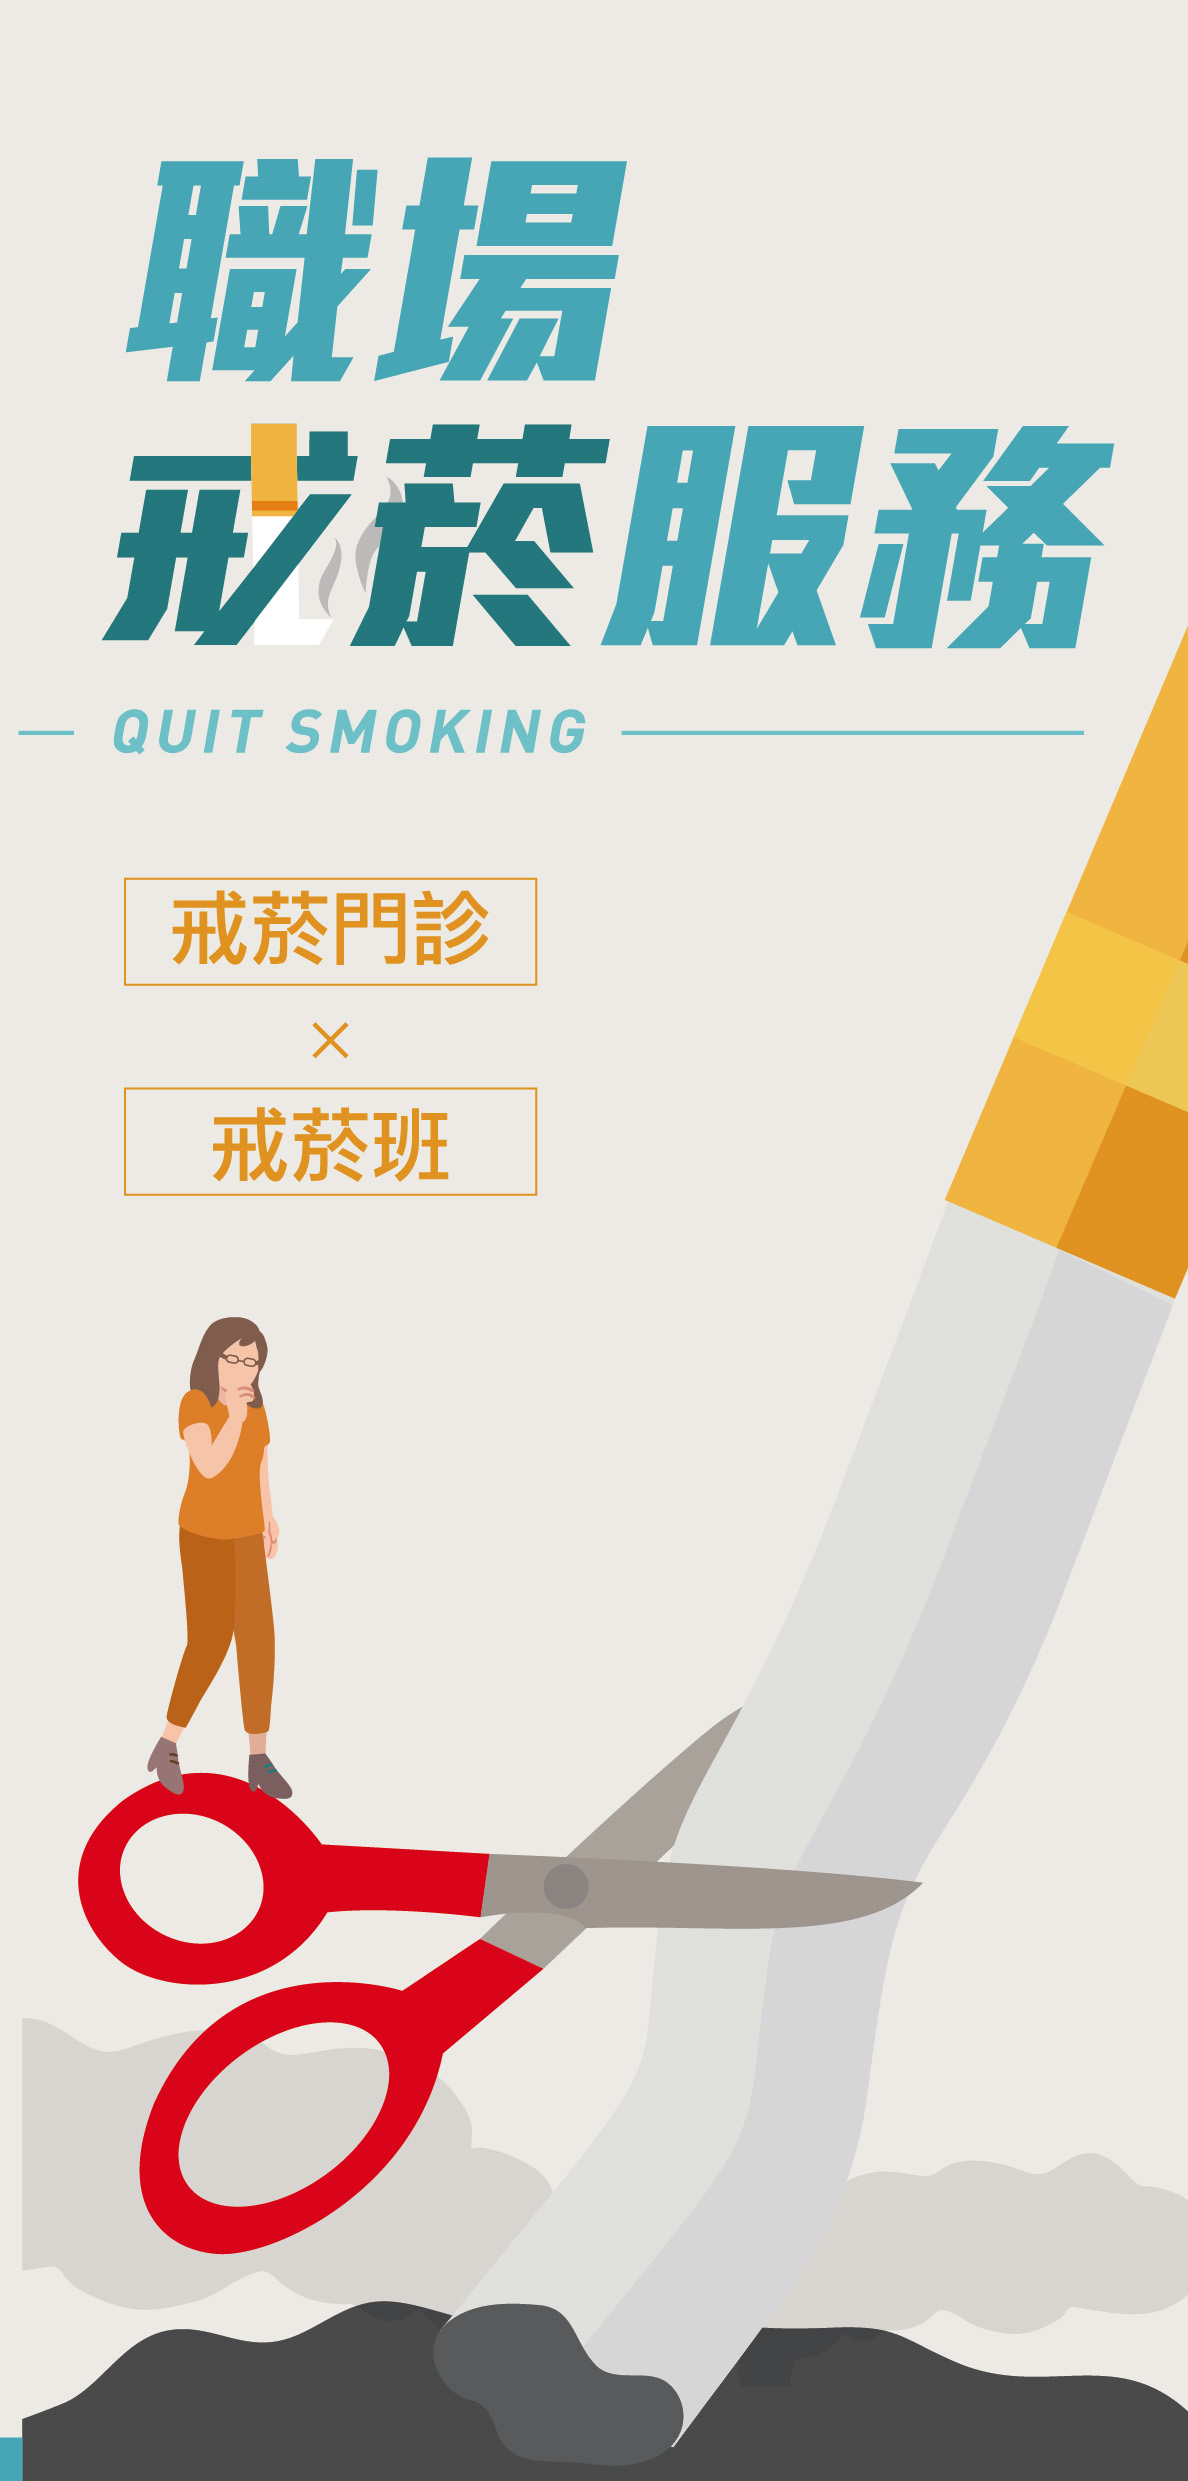 職場戒菸服務(折頁)文章照片